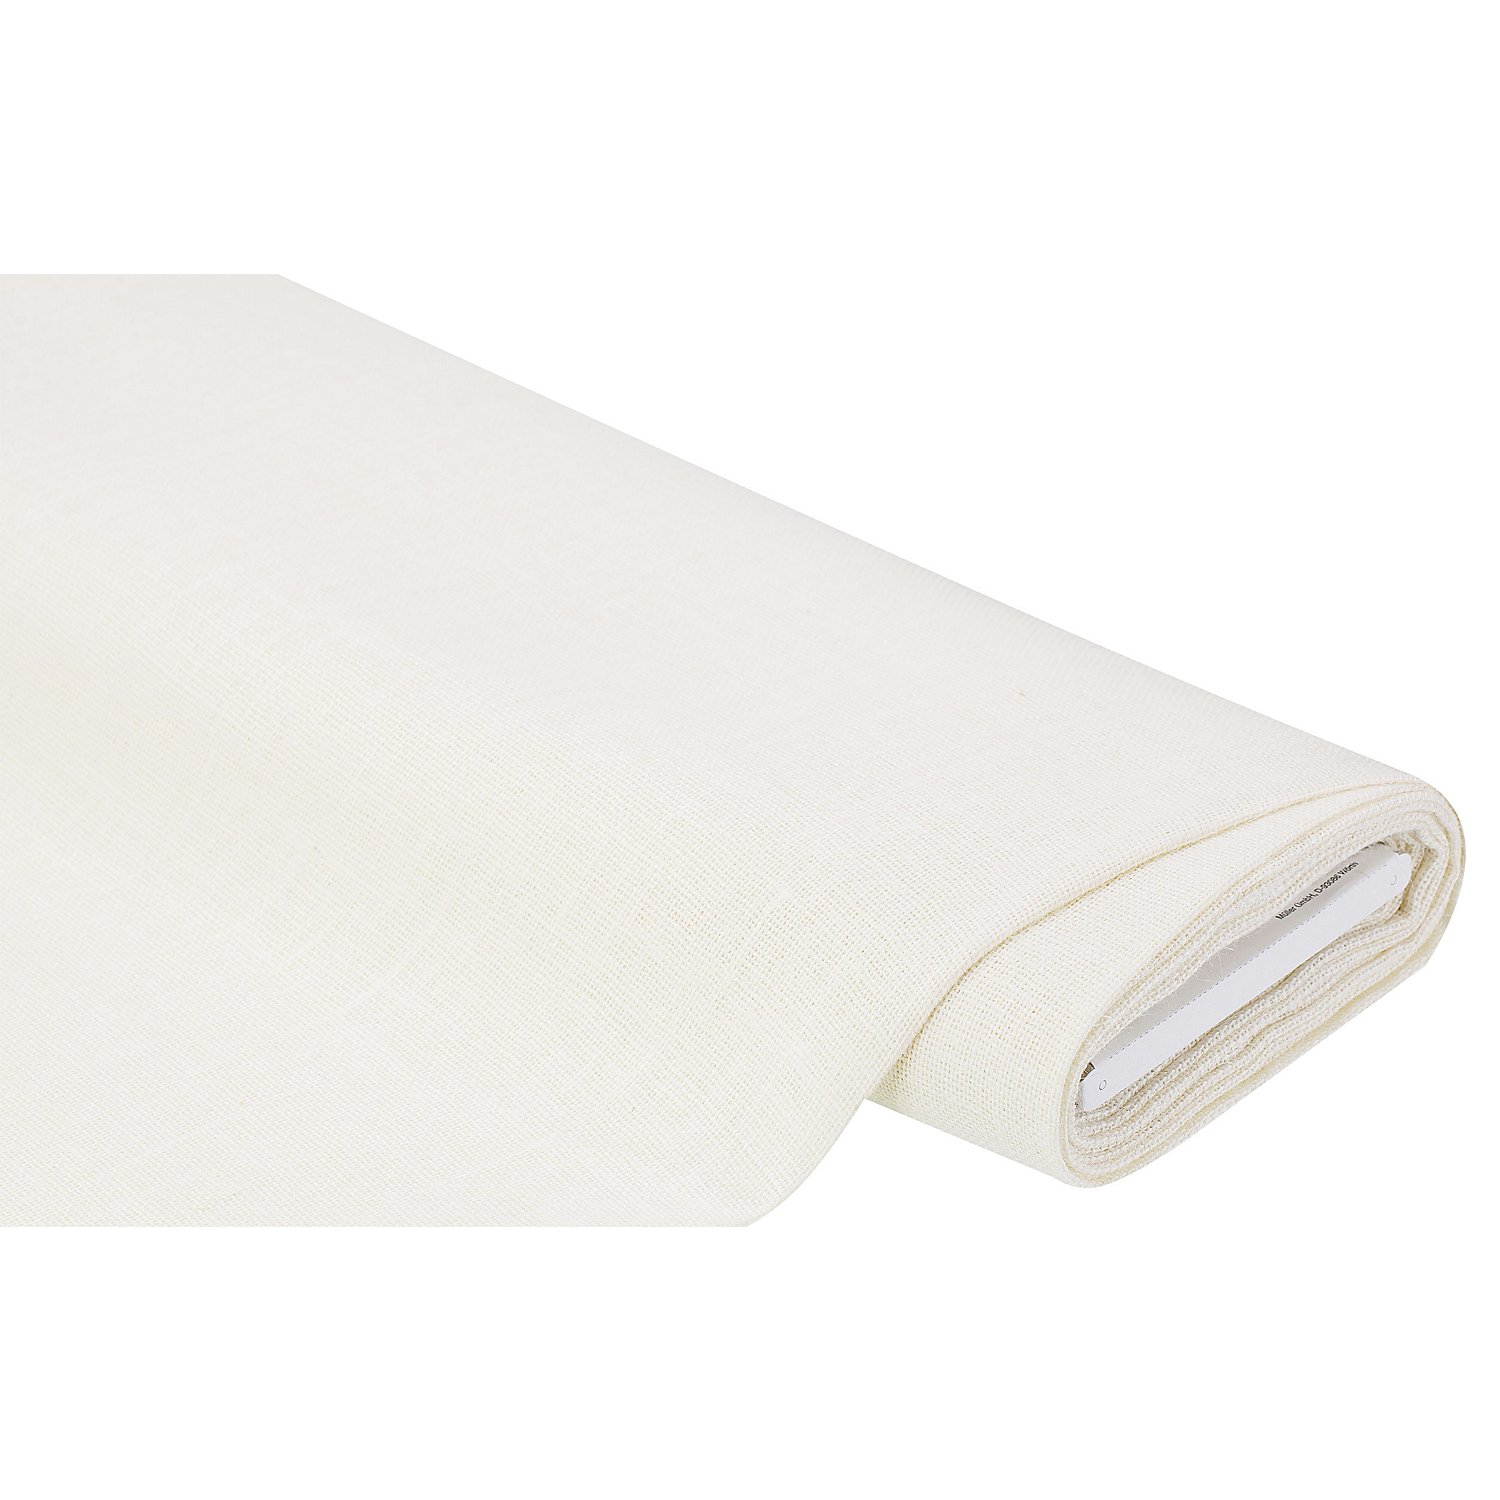 Toile tissu-blanc 150 cm de large seulement payer un petit frais de port Combinés.